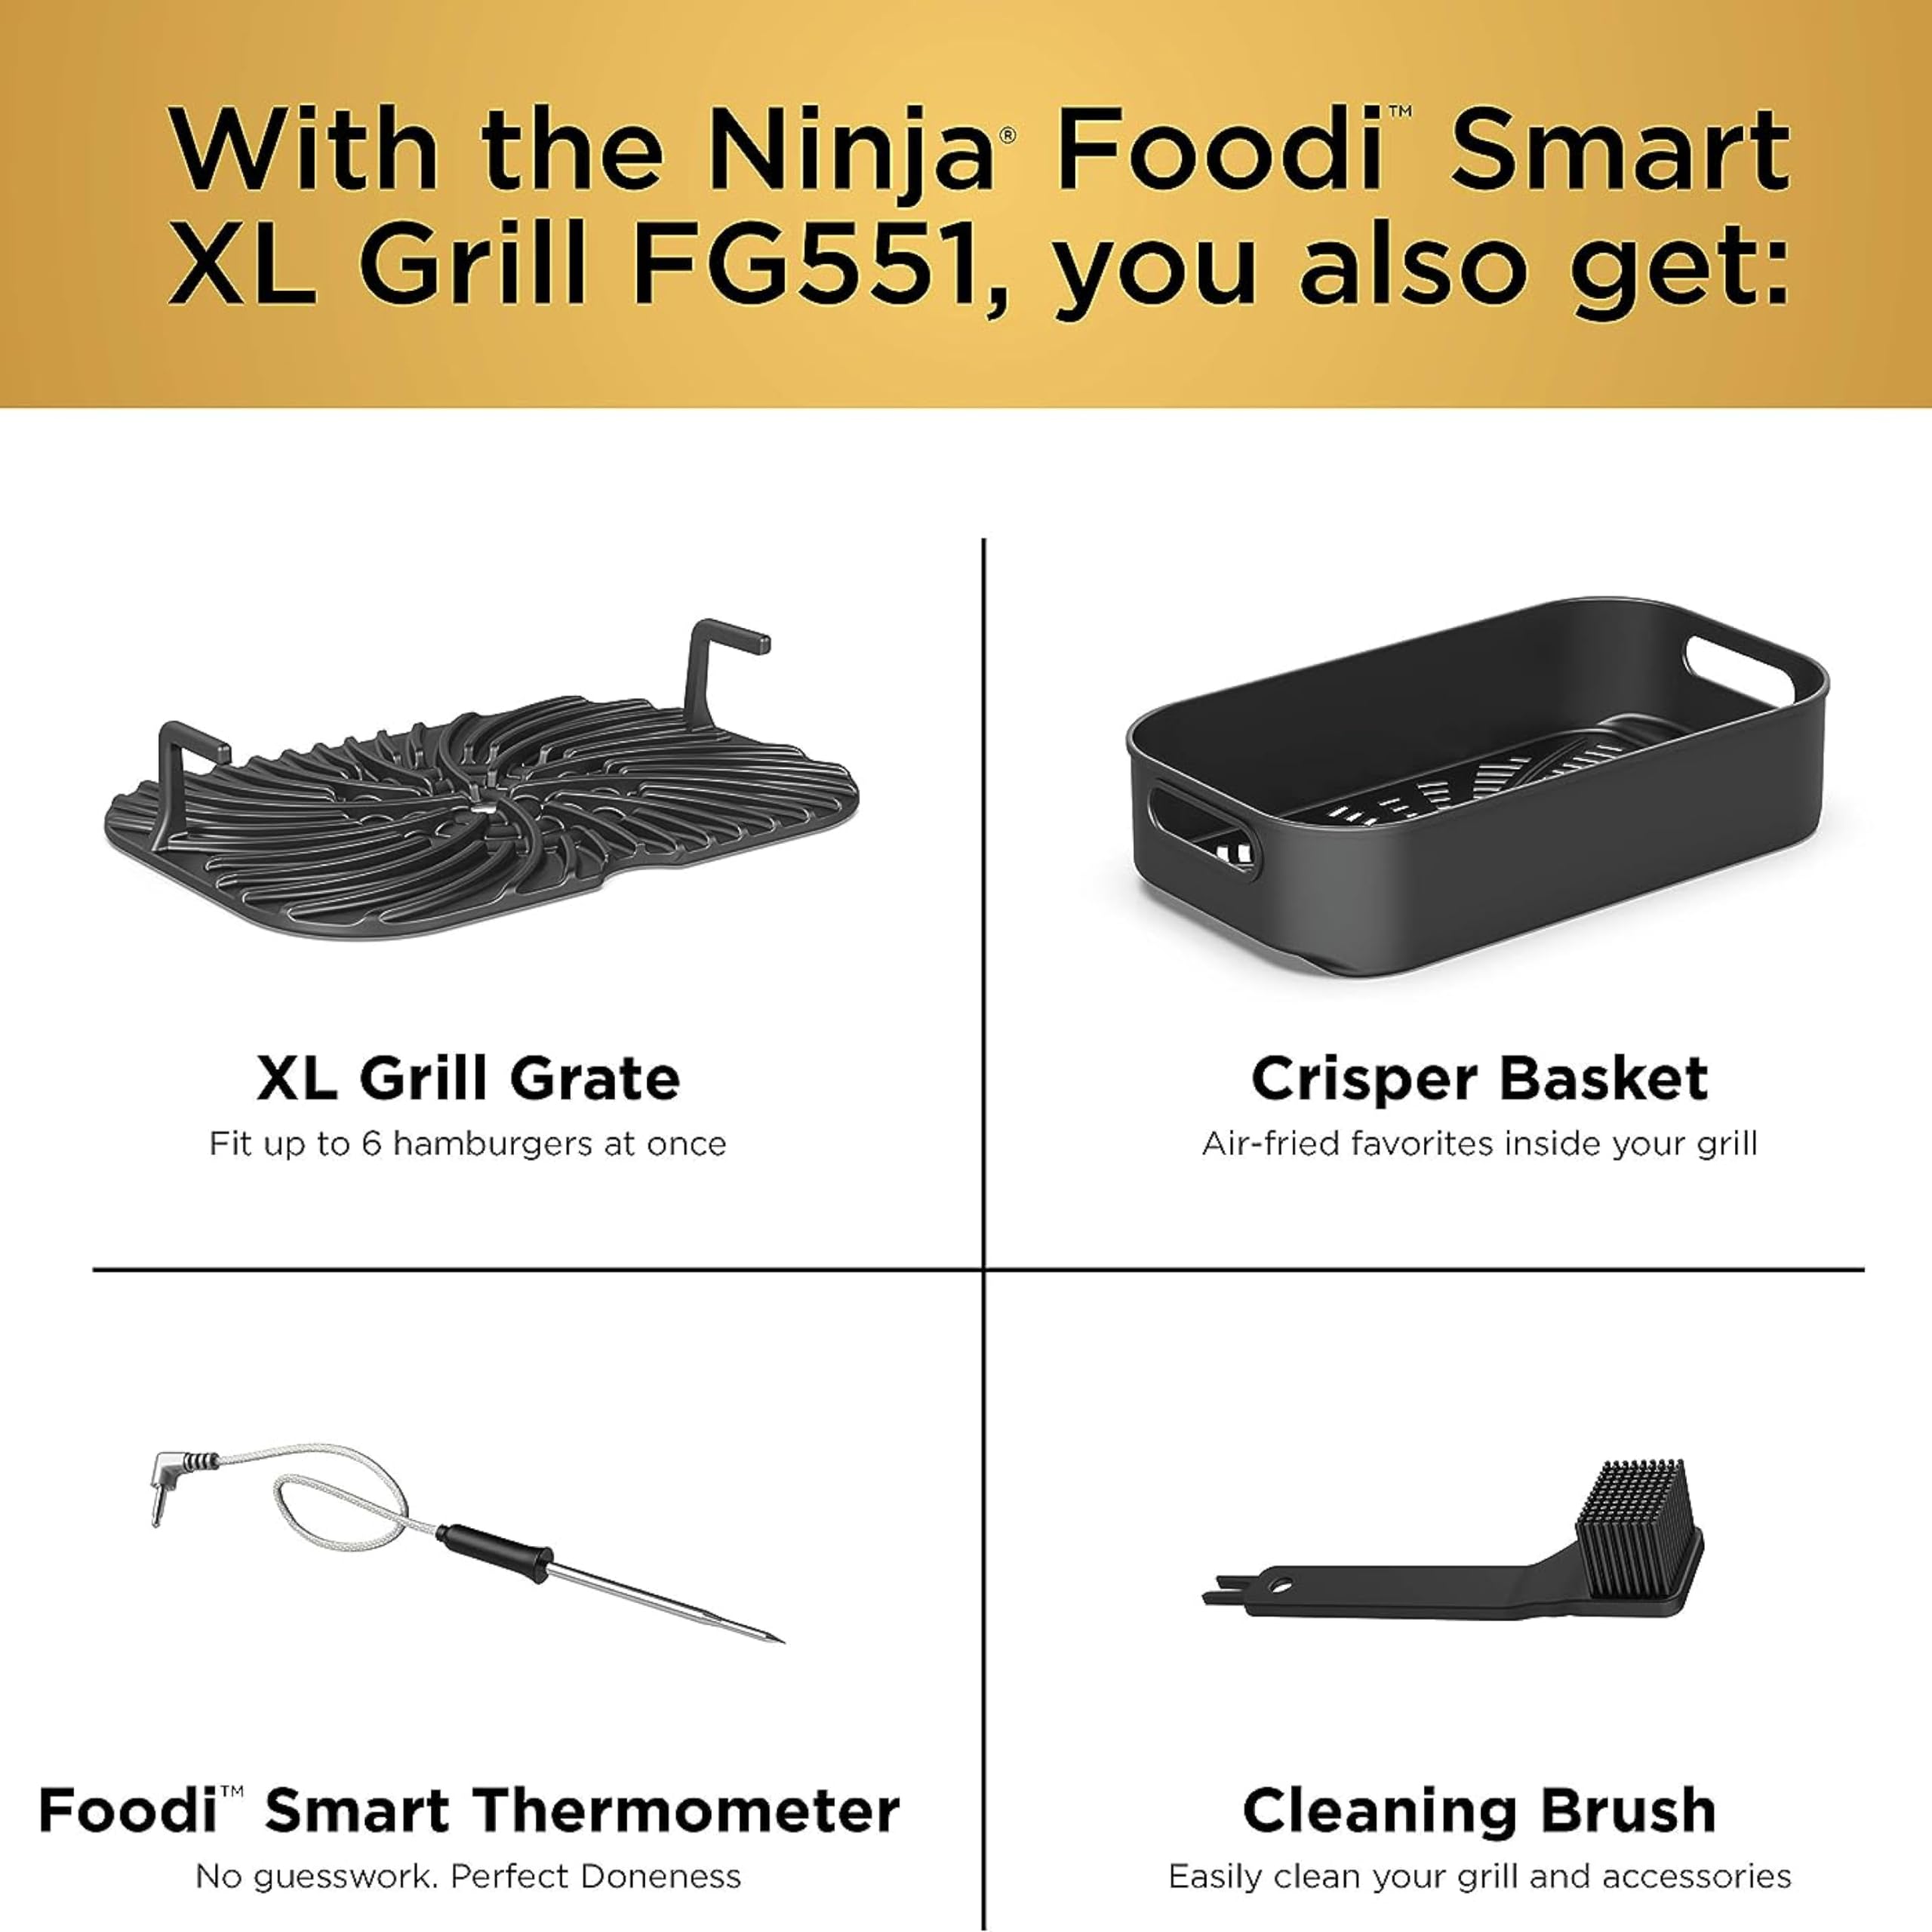 Parrilla interior Ninja FAG551 Foodi Smart XL 6 en 1